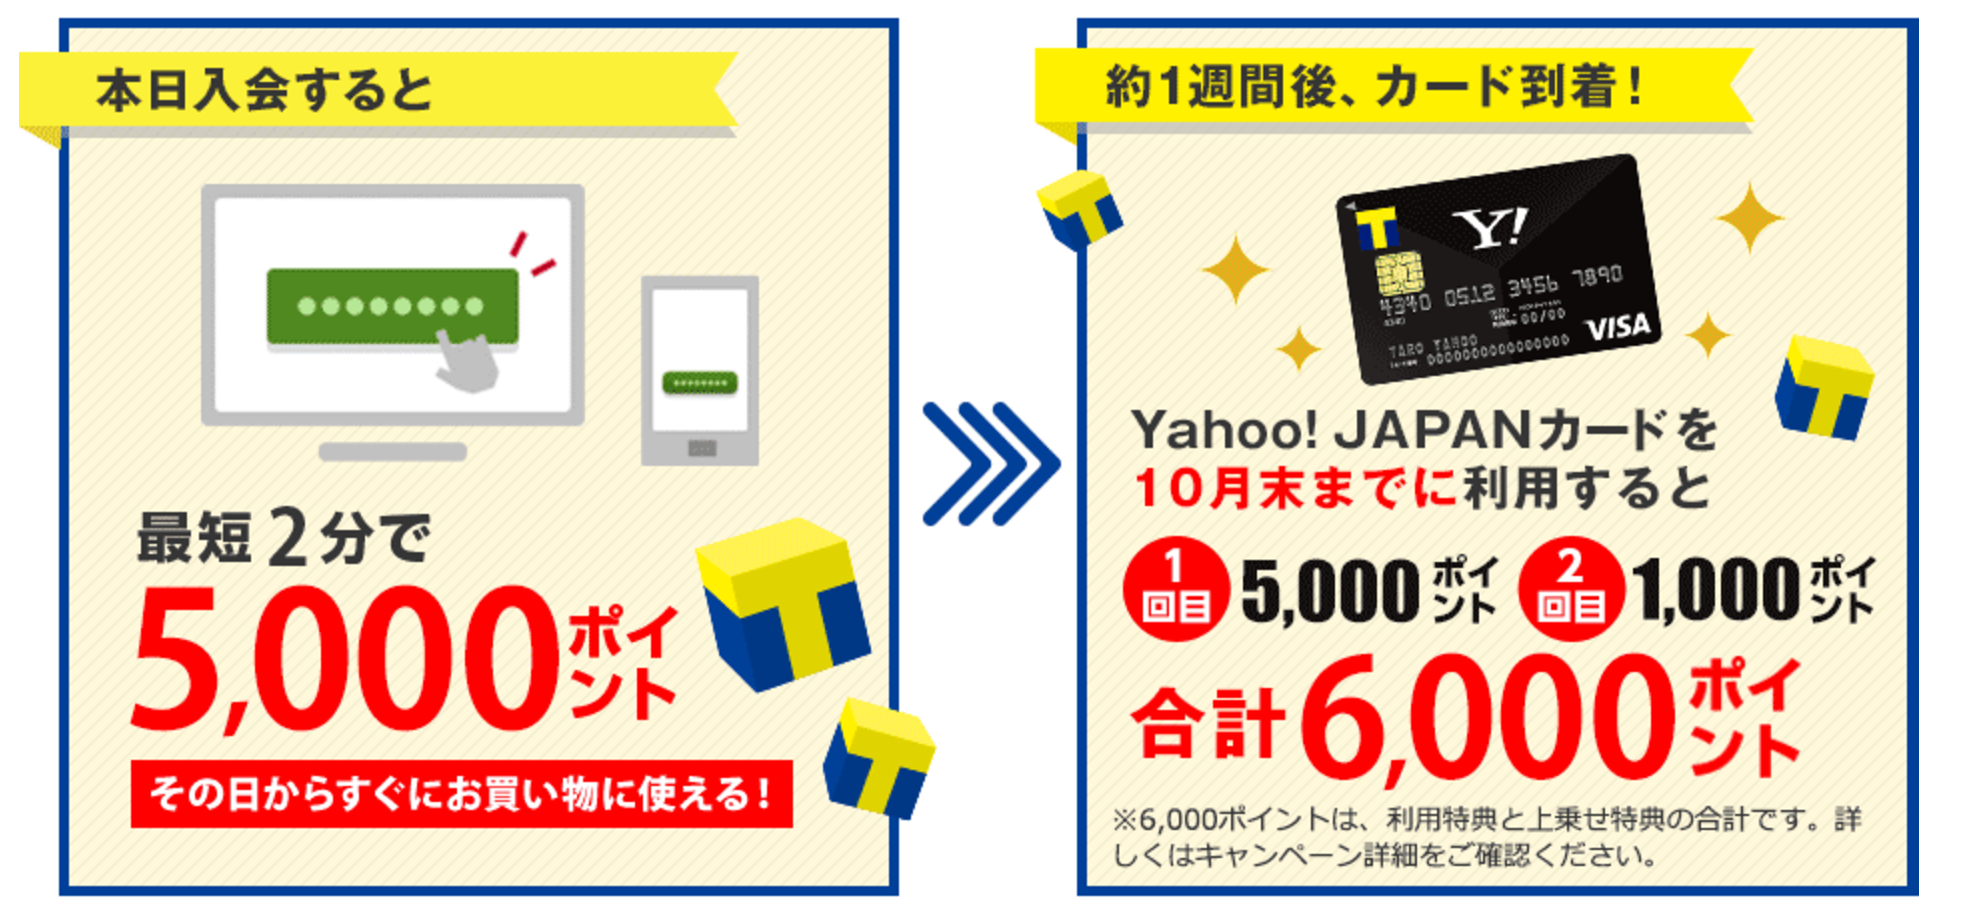 げん玉 Yahoo Japanカードで一番得するポイントサイト 日本ポイントサイト情報 Pointjp